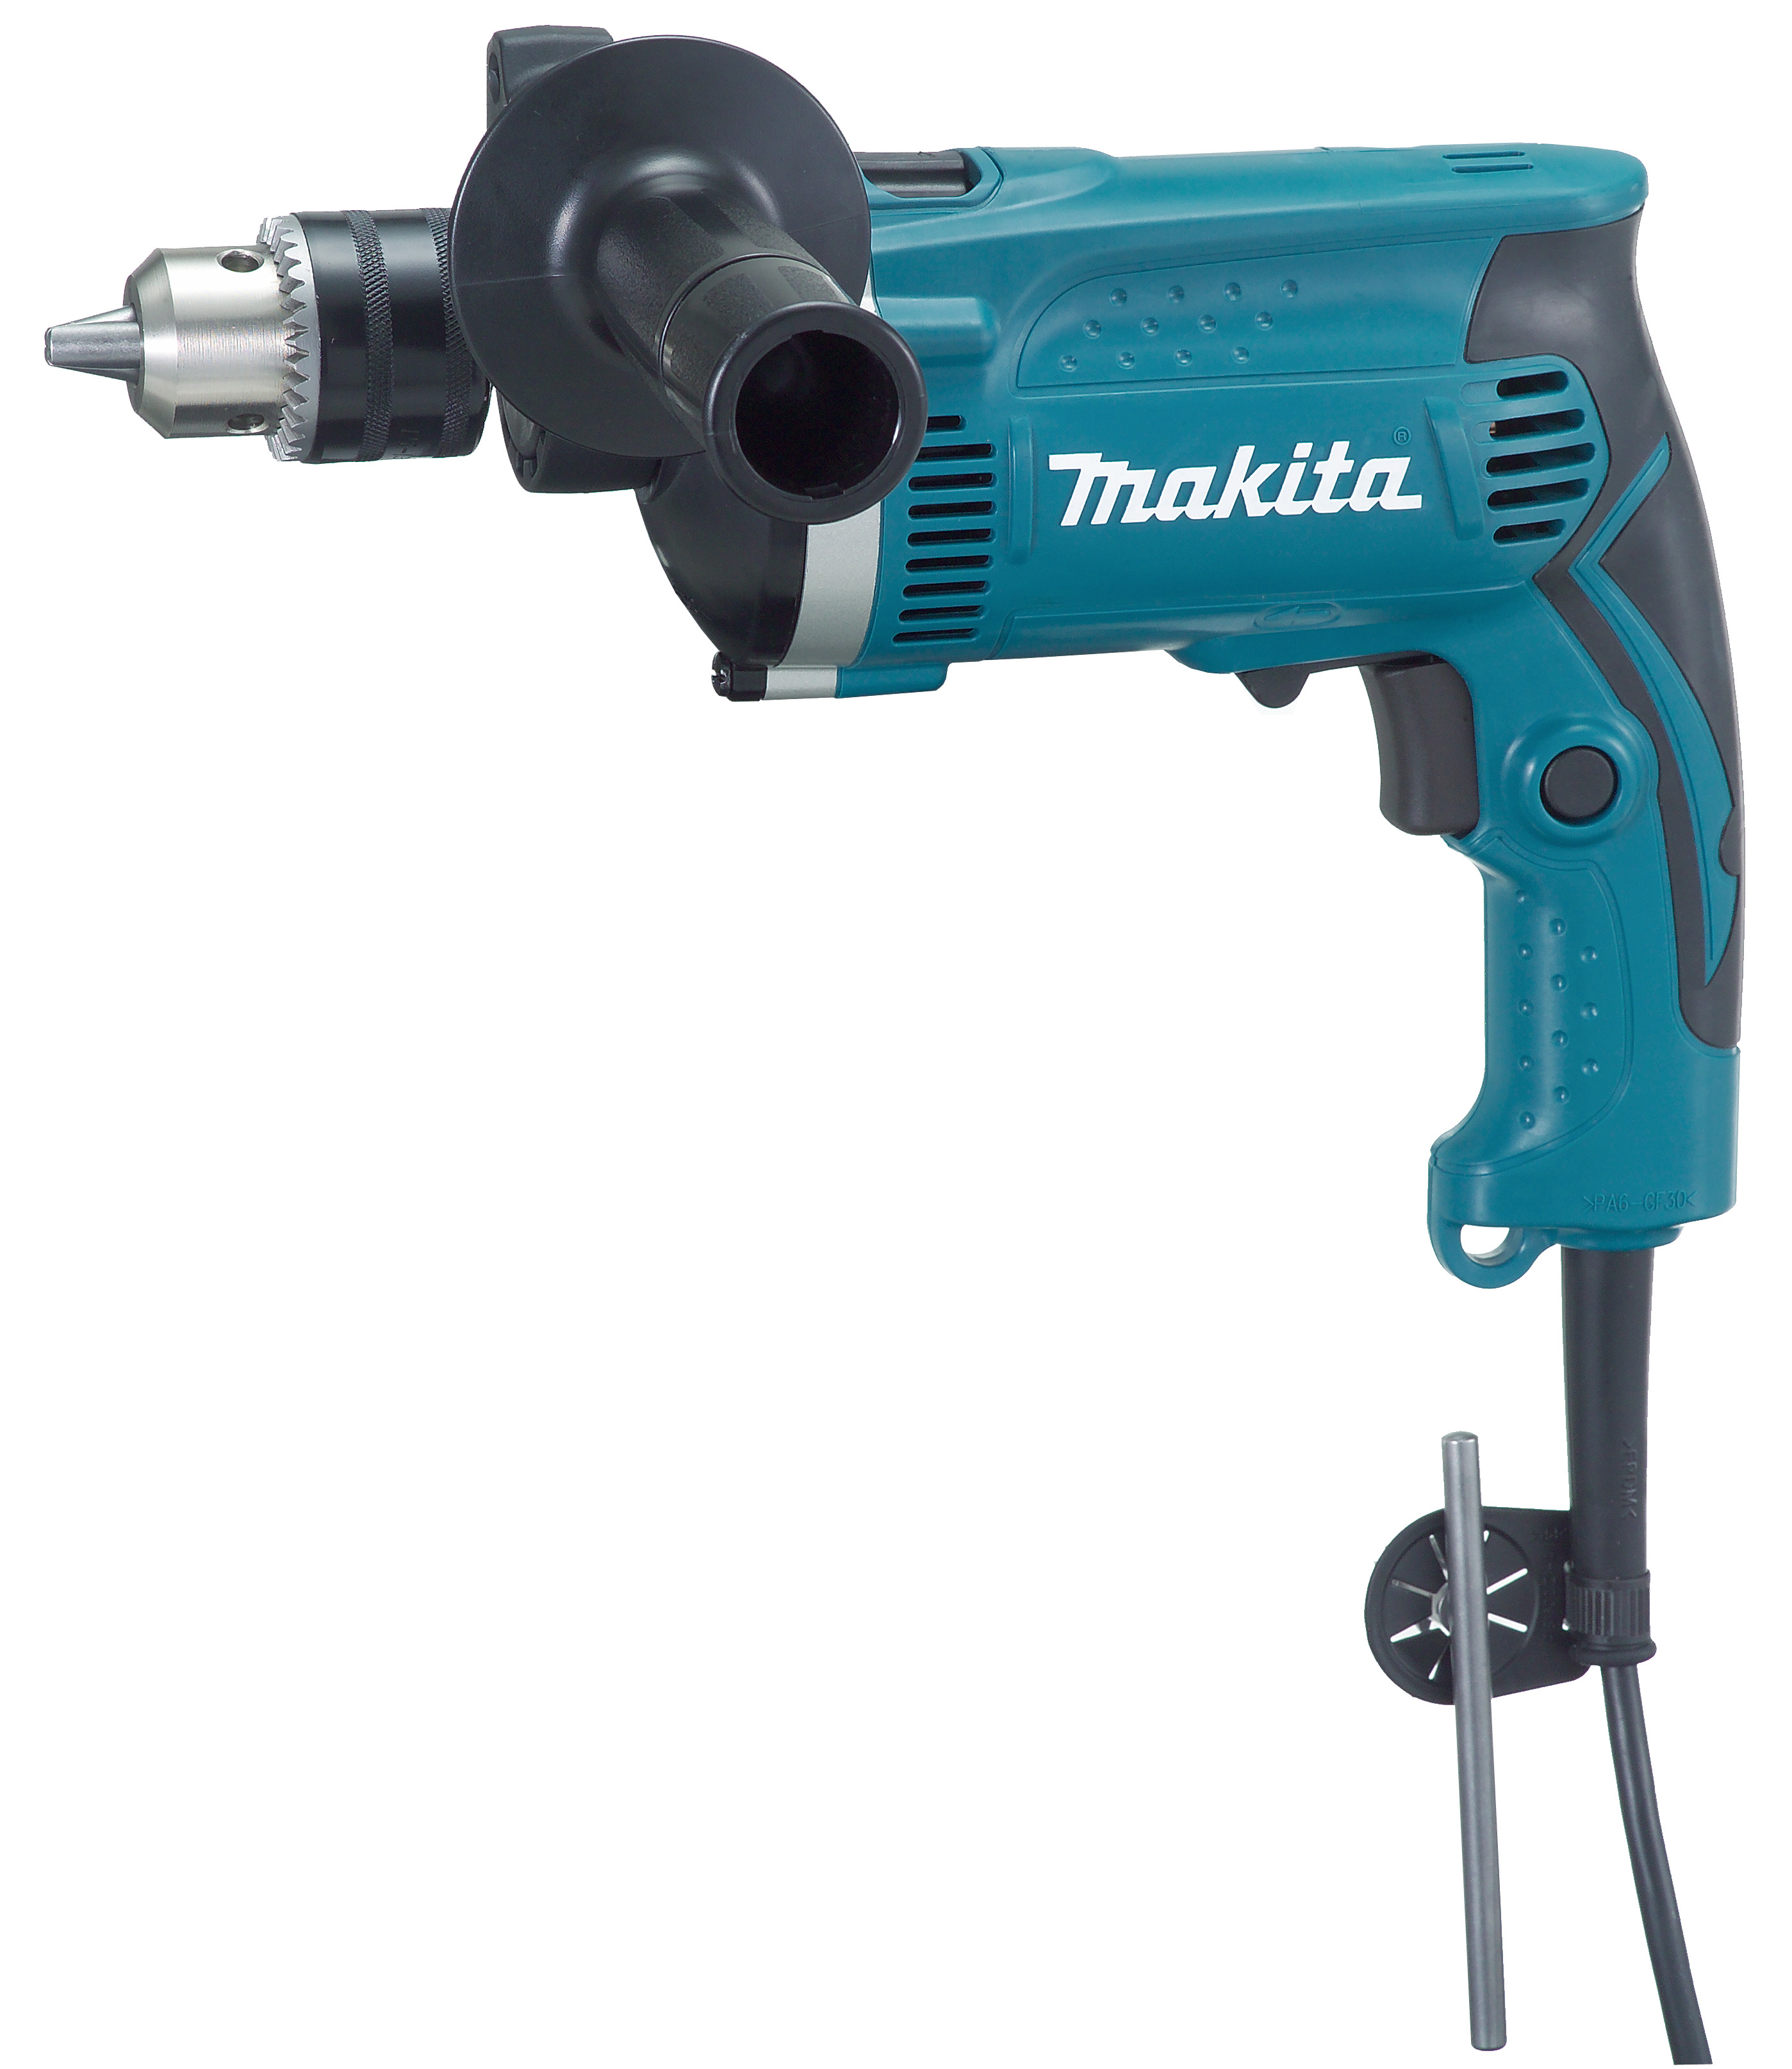 Makita Tools Drill Online Shop, UP TO 67% OFF | www.loop-cn.com